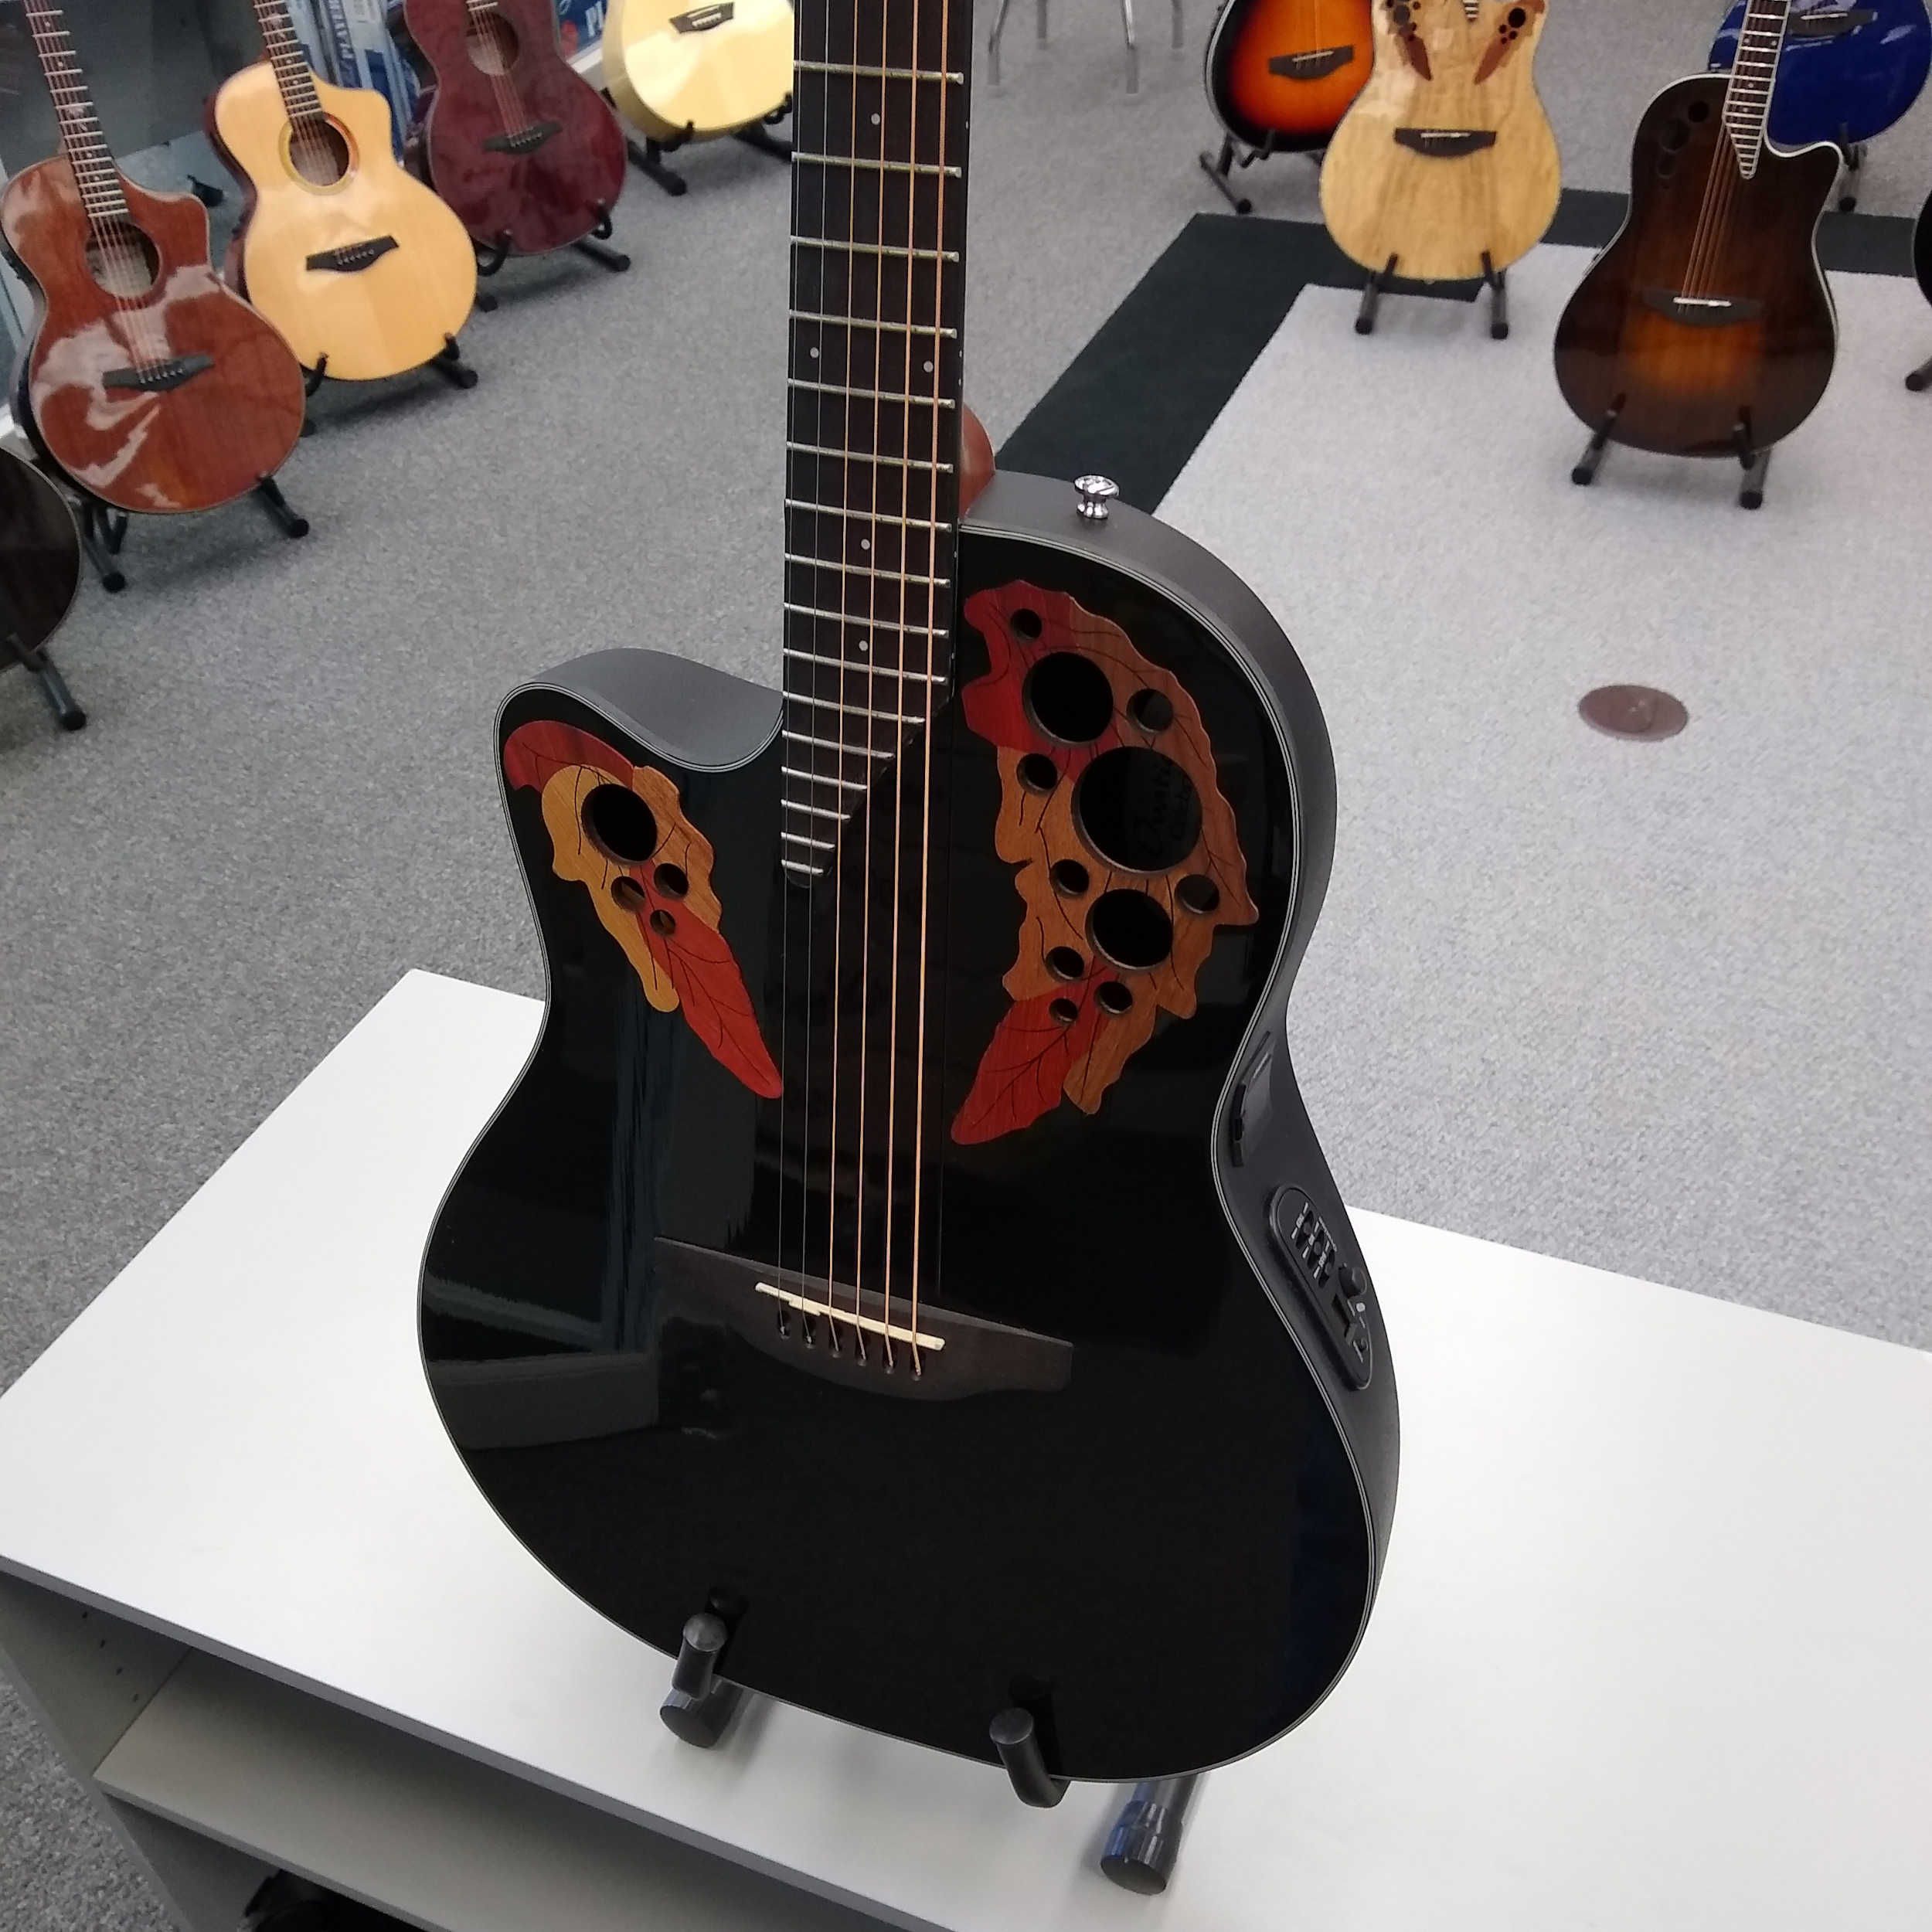 Ovation Celebrity Elite CE445L Acoustic-Electric Guitar Left Handed - Black